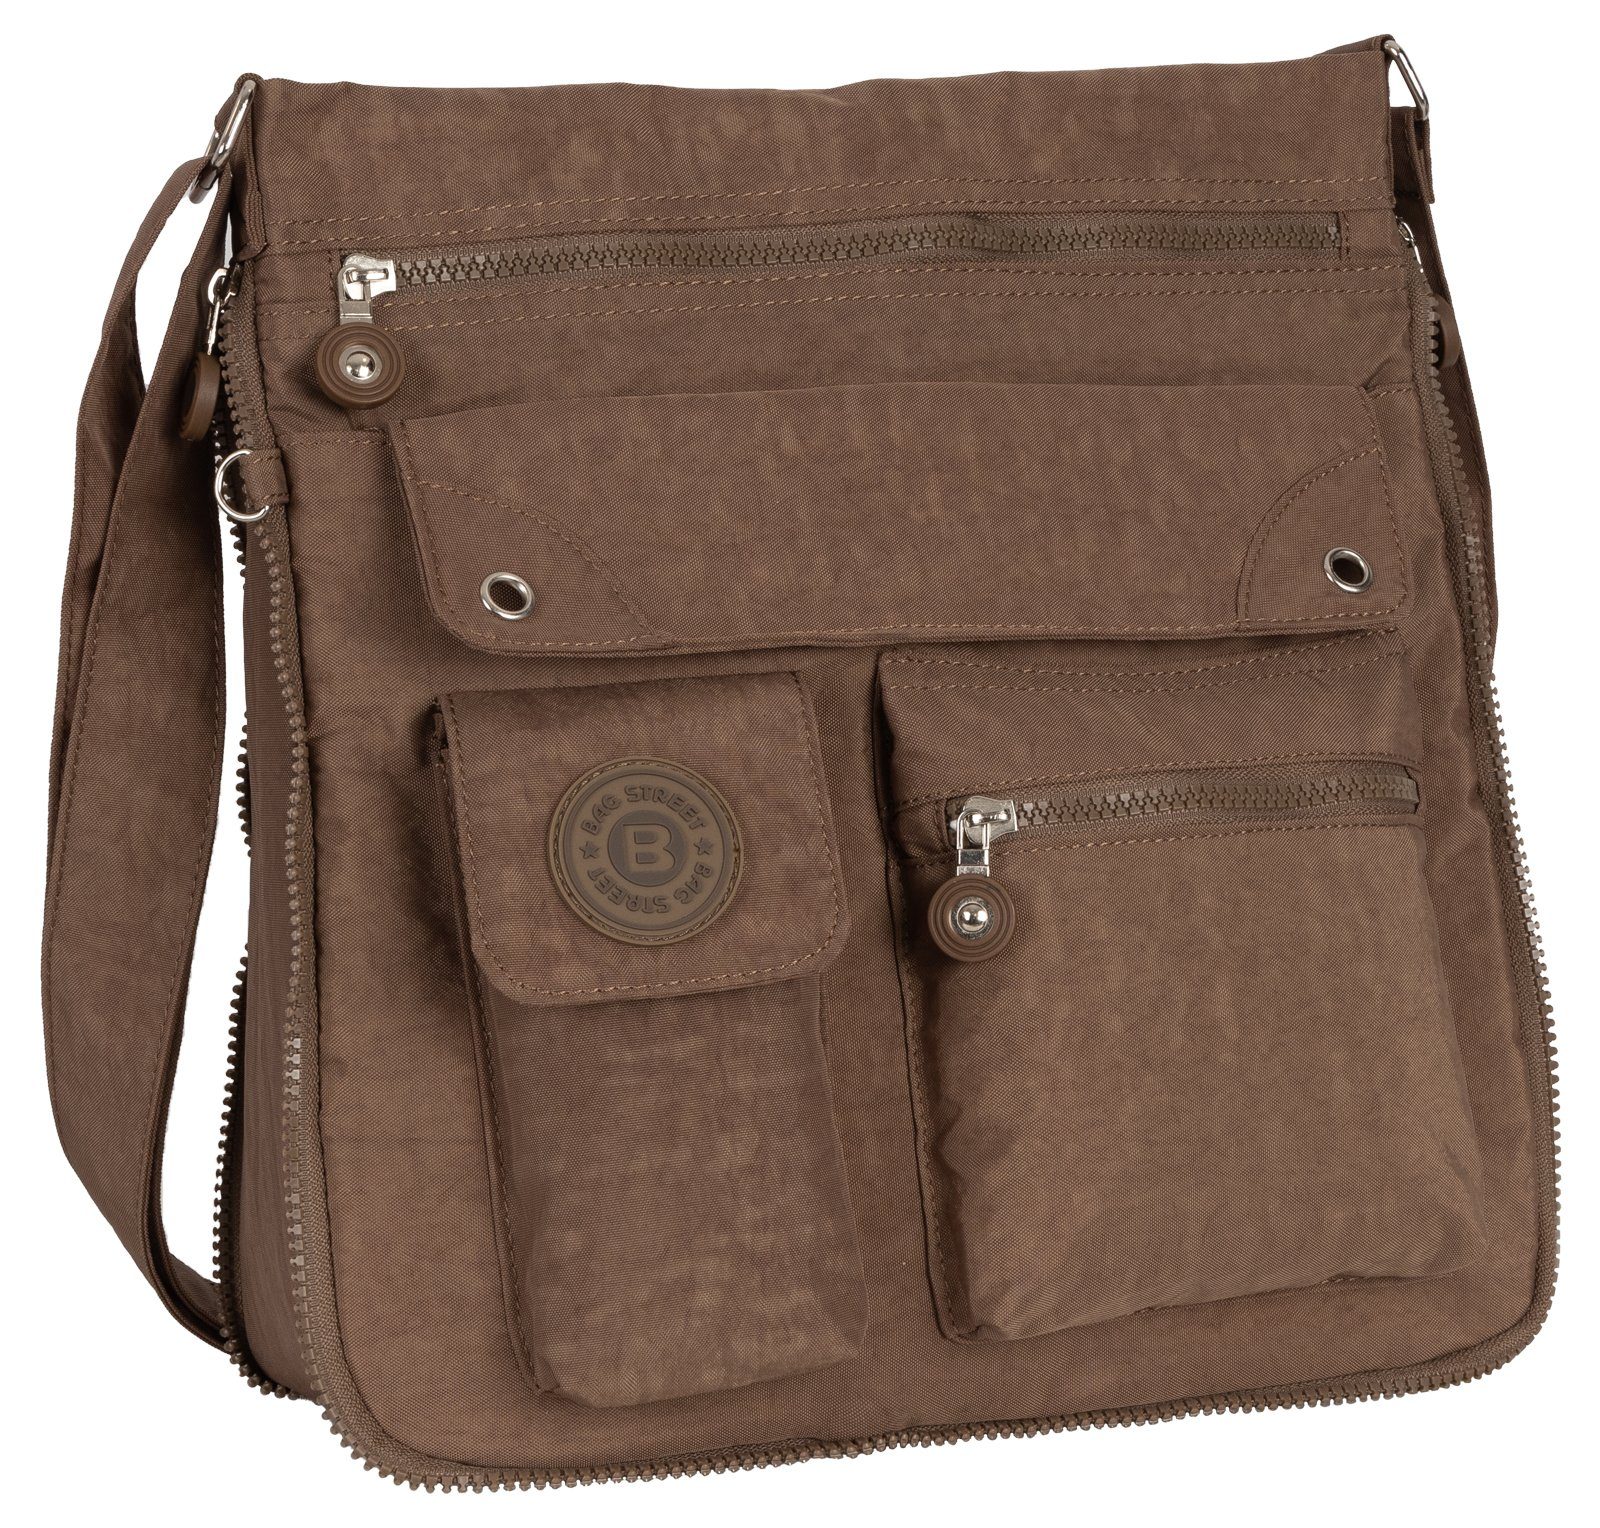 BAG STREET Schlüsseltasche Damentasche Umhängetasche Handtasche Schultertasche Schwarz, als Schultertasche, Umhängetasche tragbar Braun